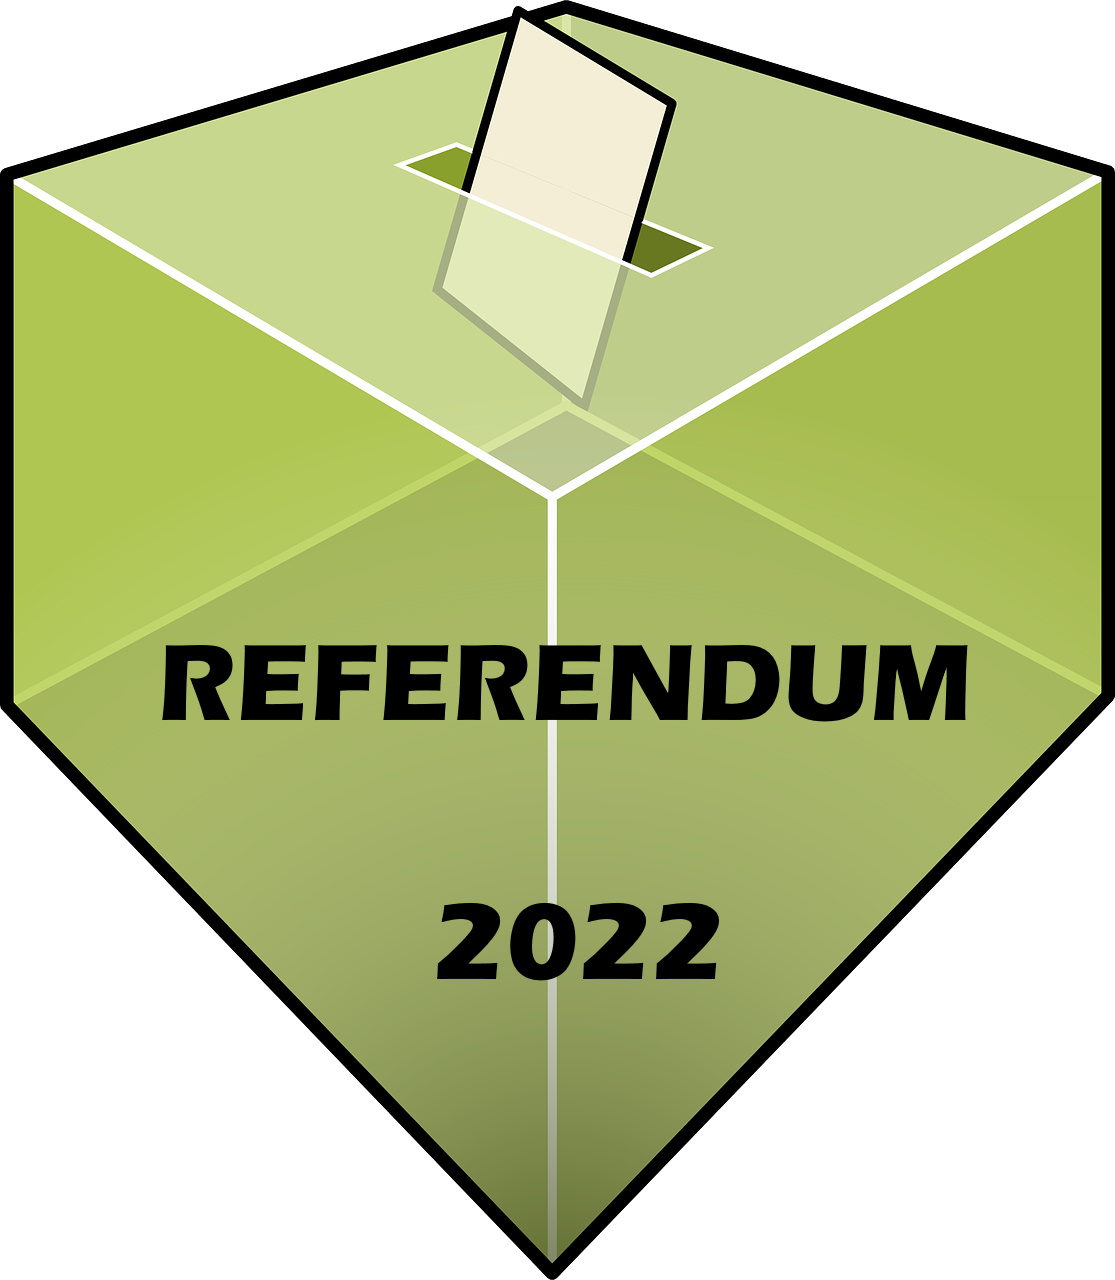 Referendum 2022 - Trasporto persone fragili/disabili presso seggio elettorale